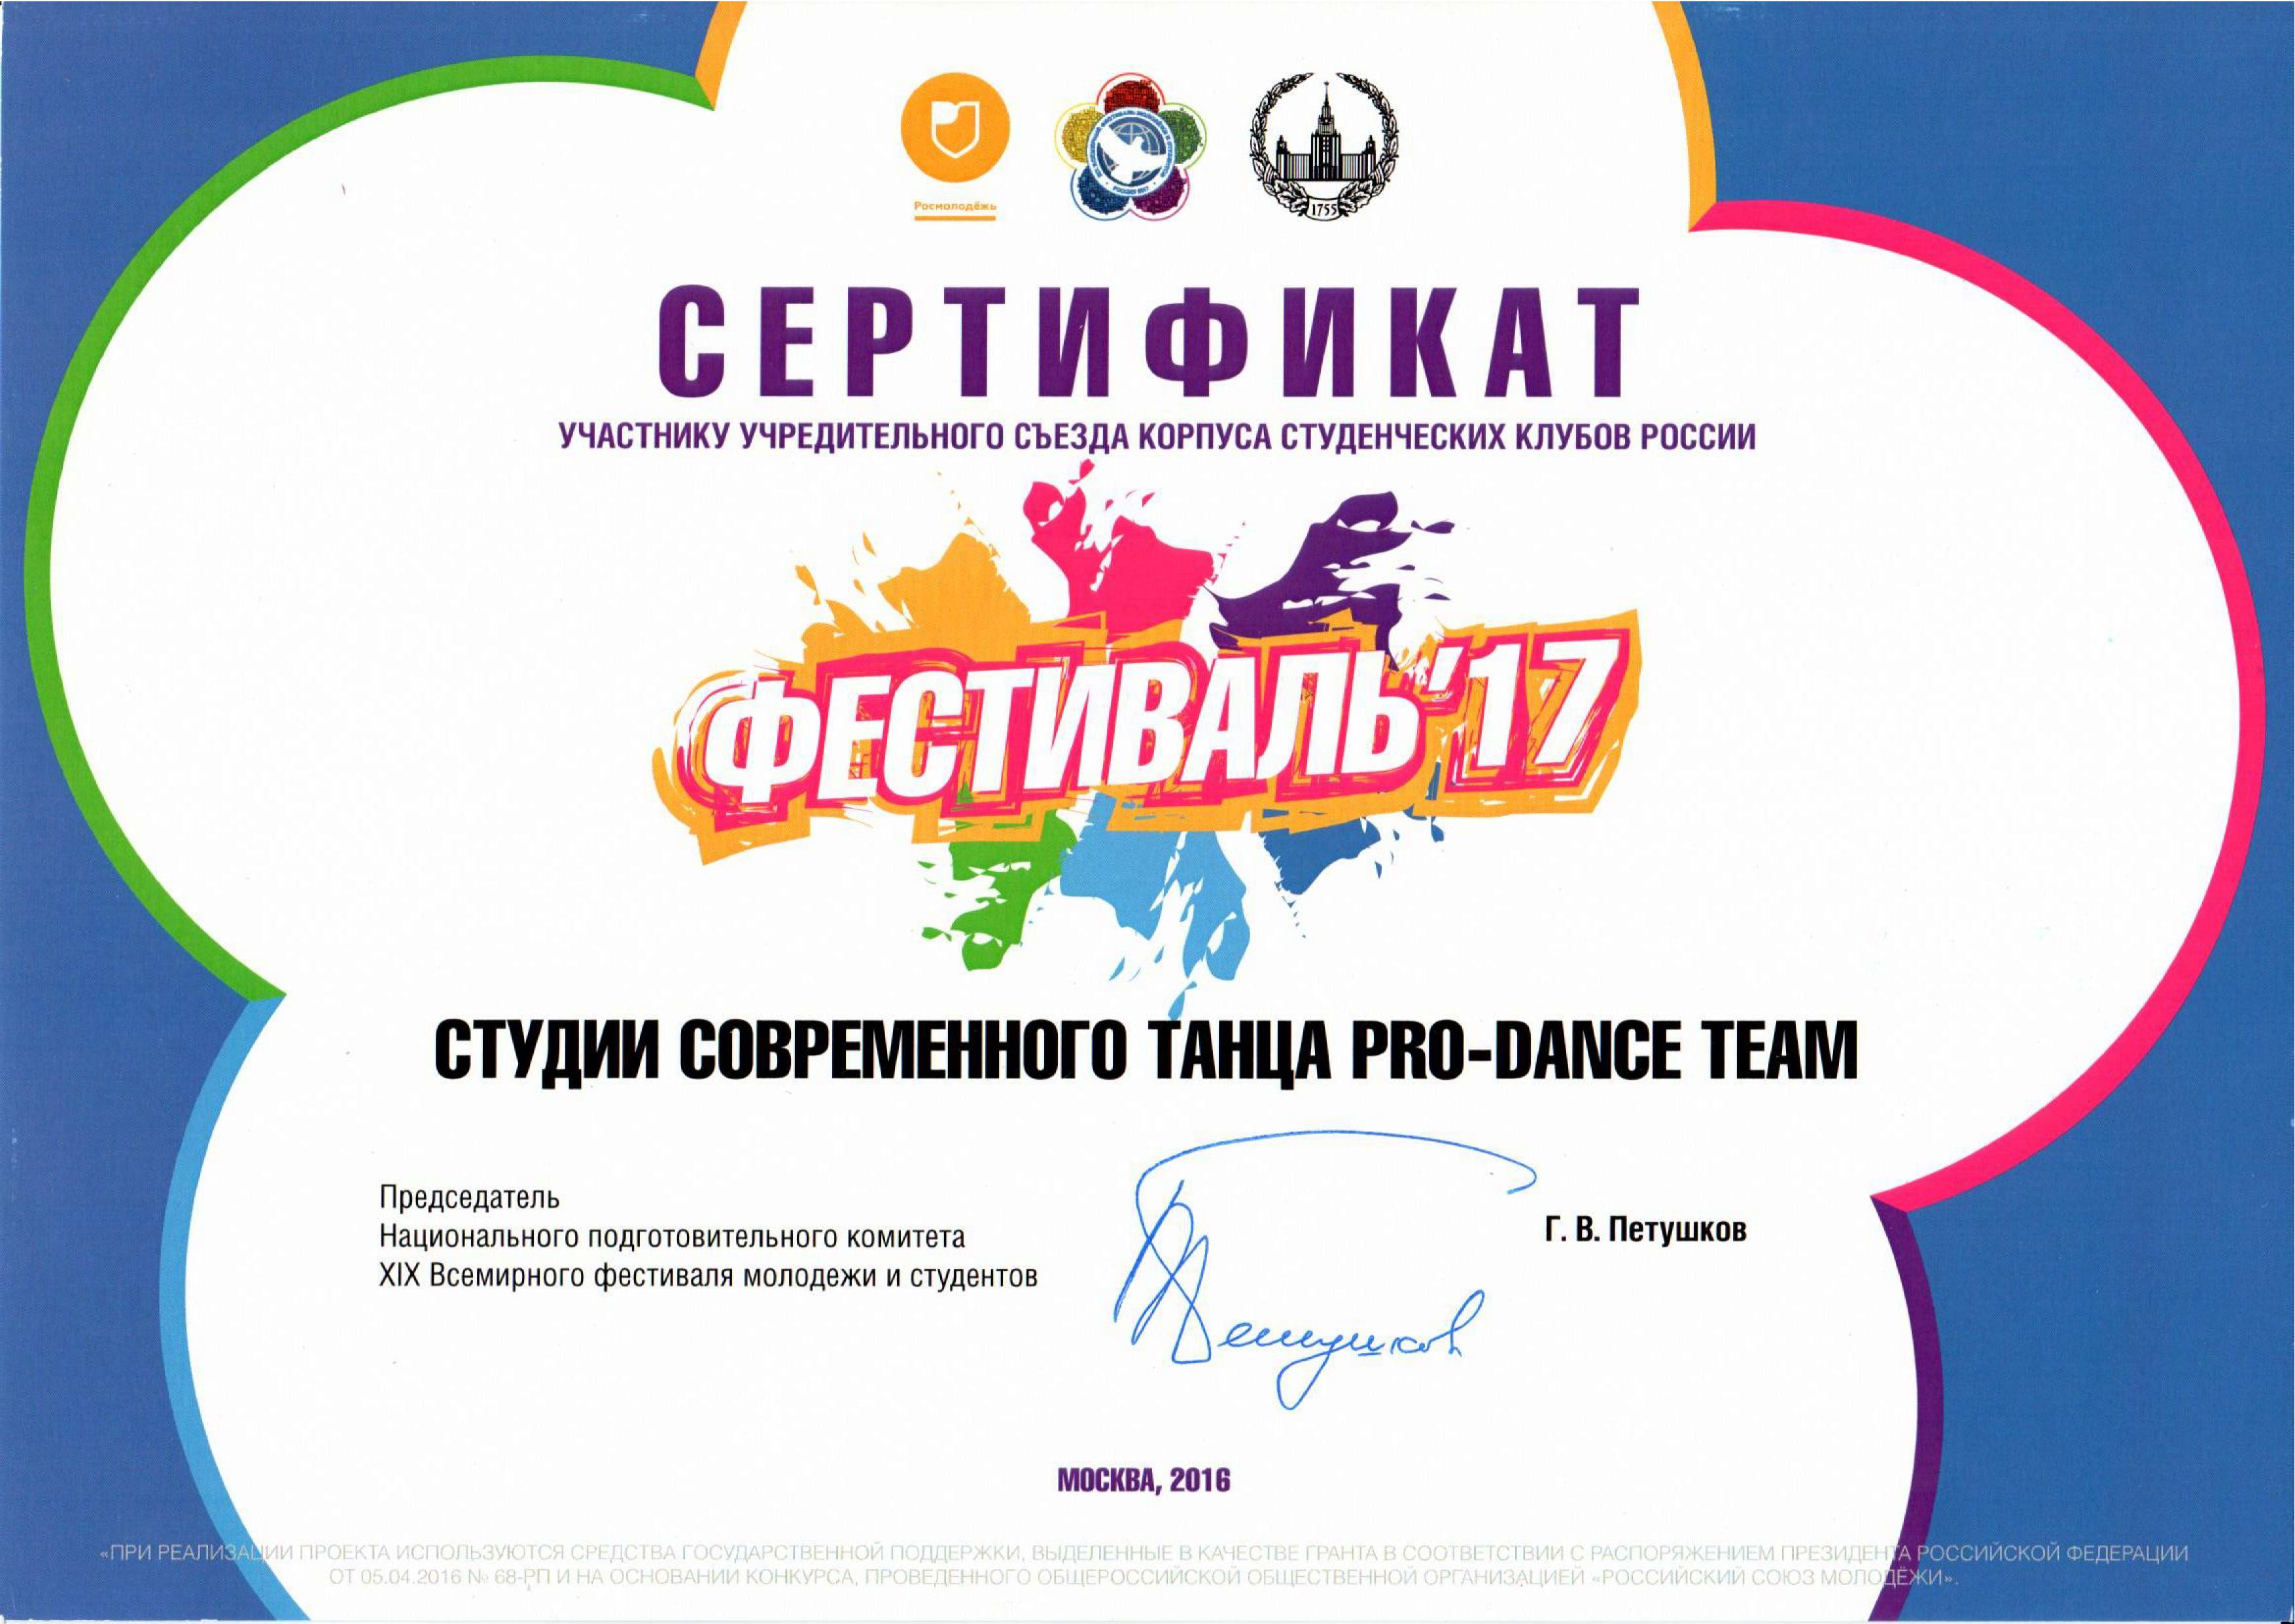 Сертификат участнику учредительного съезда корпуса студенческих клубов России Фестиваль'17 МГЭУ